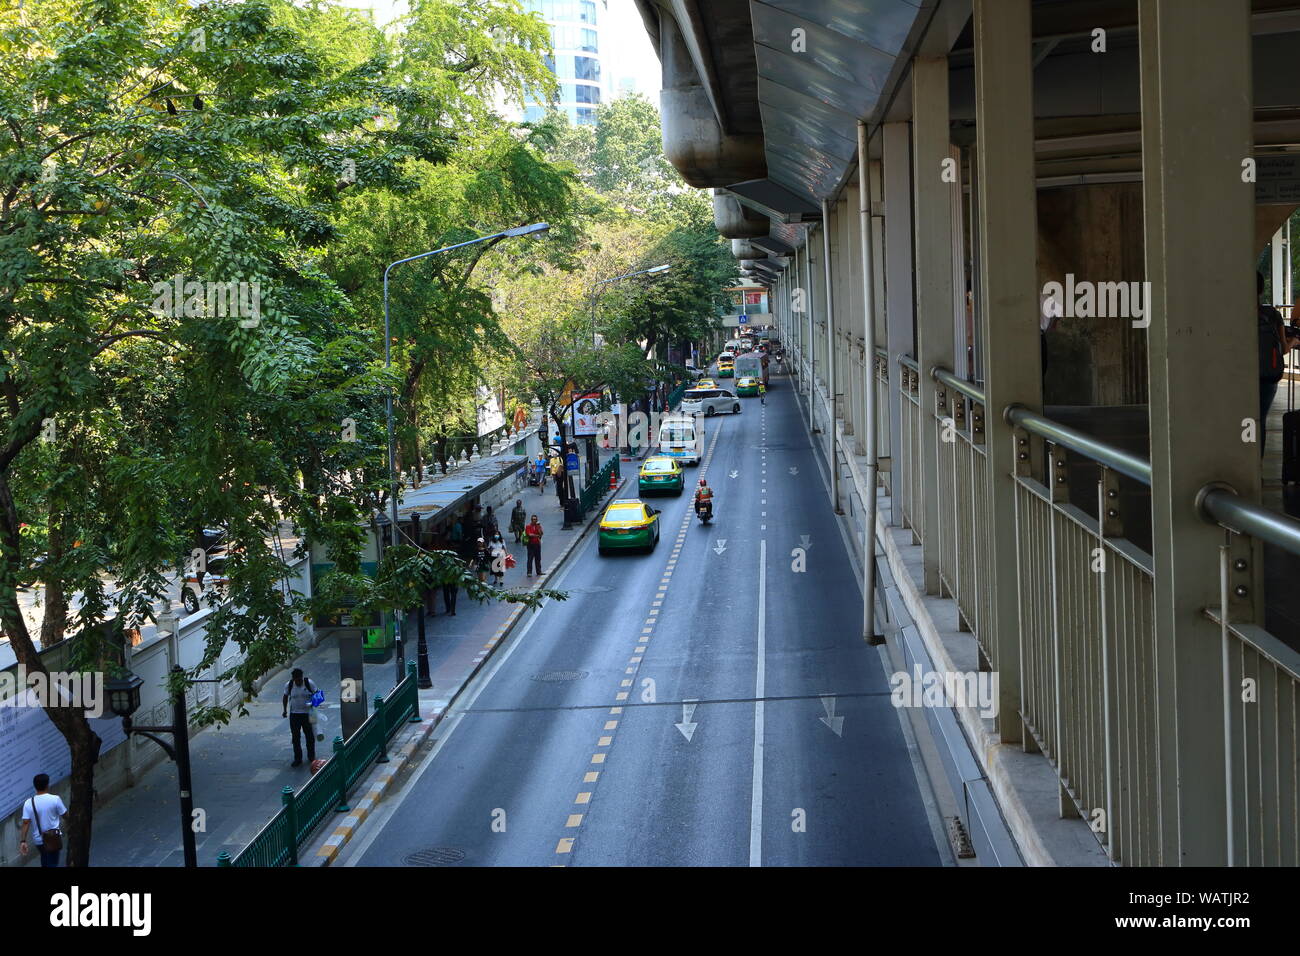 La disminución de la vista en perspectiva de Rama 1 Road, enfrente del templo Pathumwanaram, mirando desde la Plaza Siam a la intersección de Ratchaprasong, negocios y sho Foto de stock